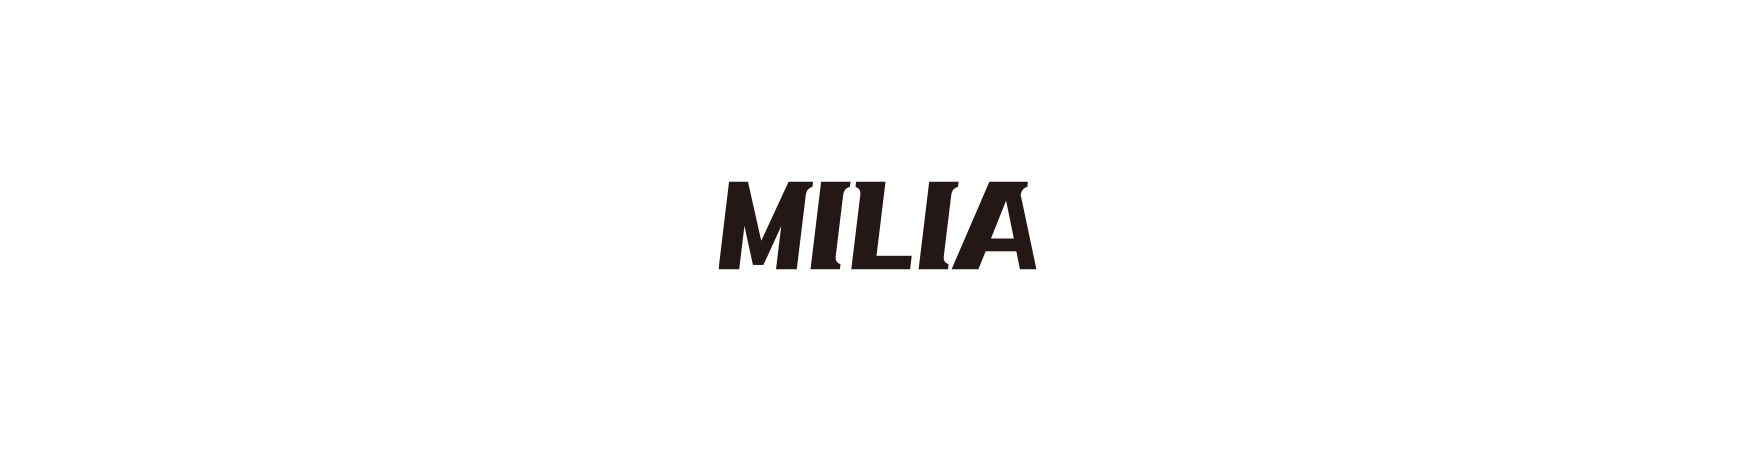 MILIA